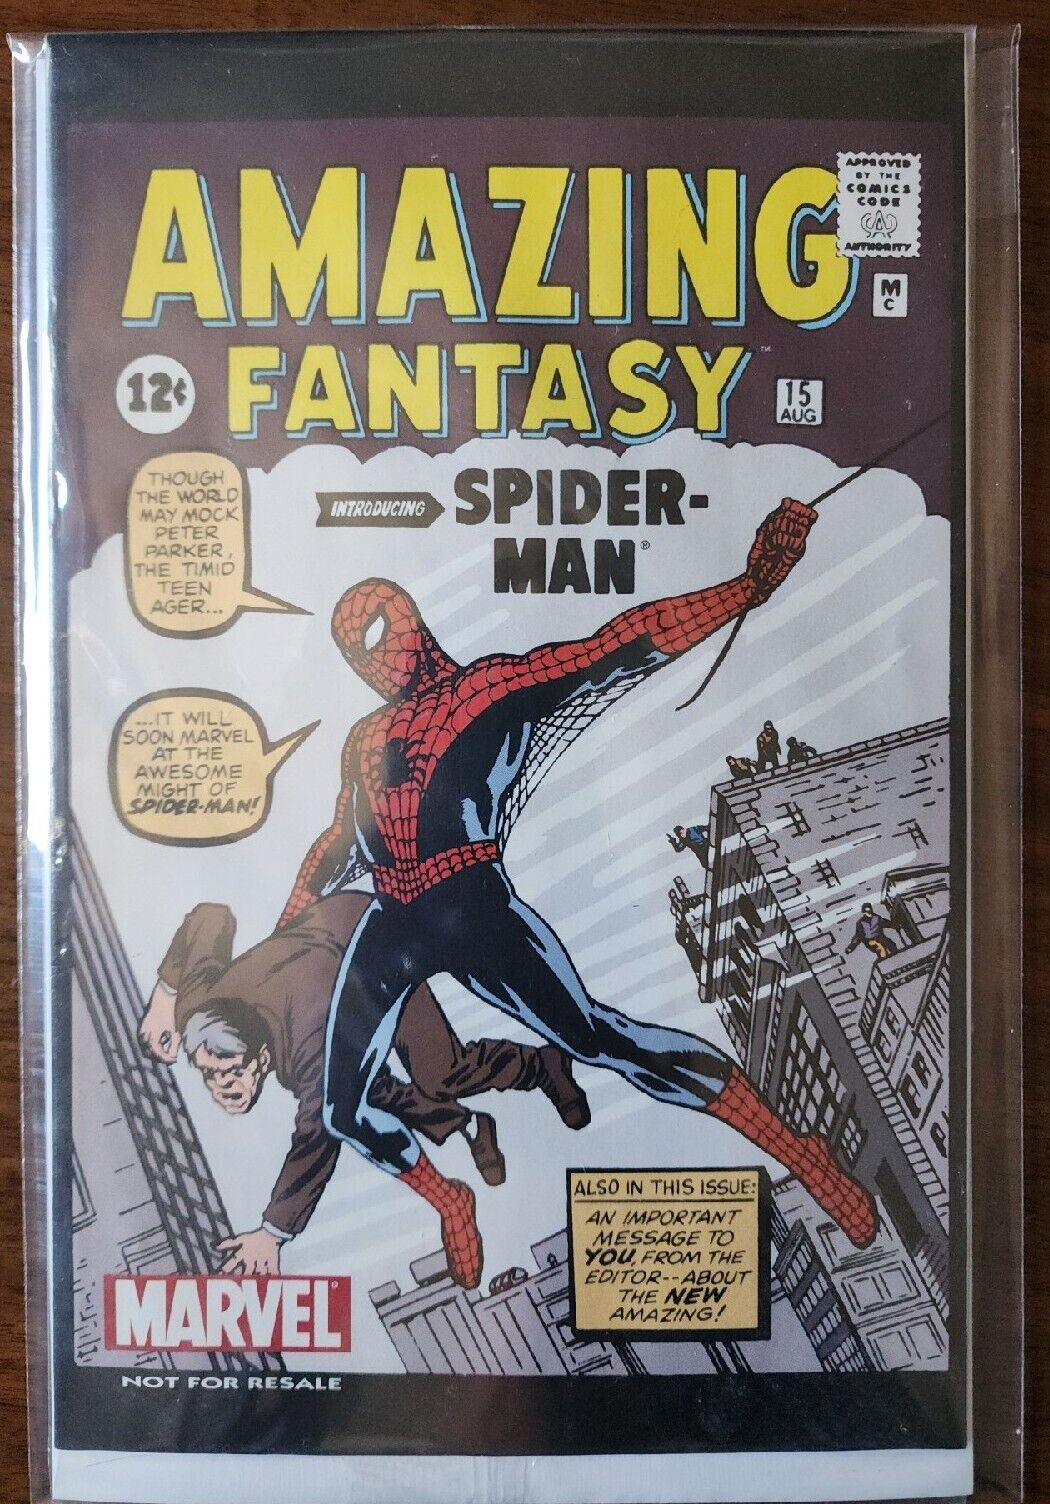 MARVEL Comics Amazing Fantasy #15 Spider-Man (Aug.1962)(Facsimile) NEW IN BAG